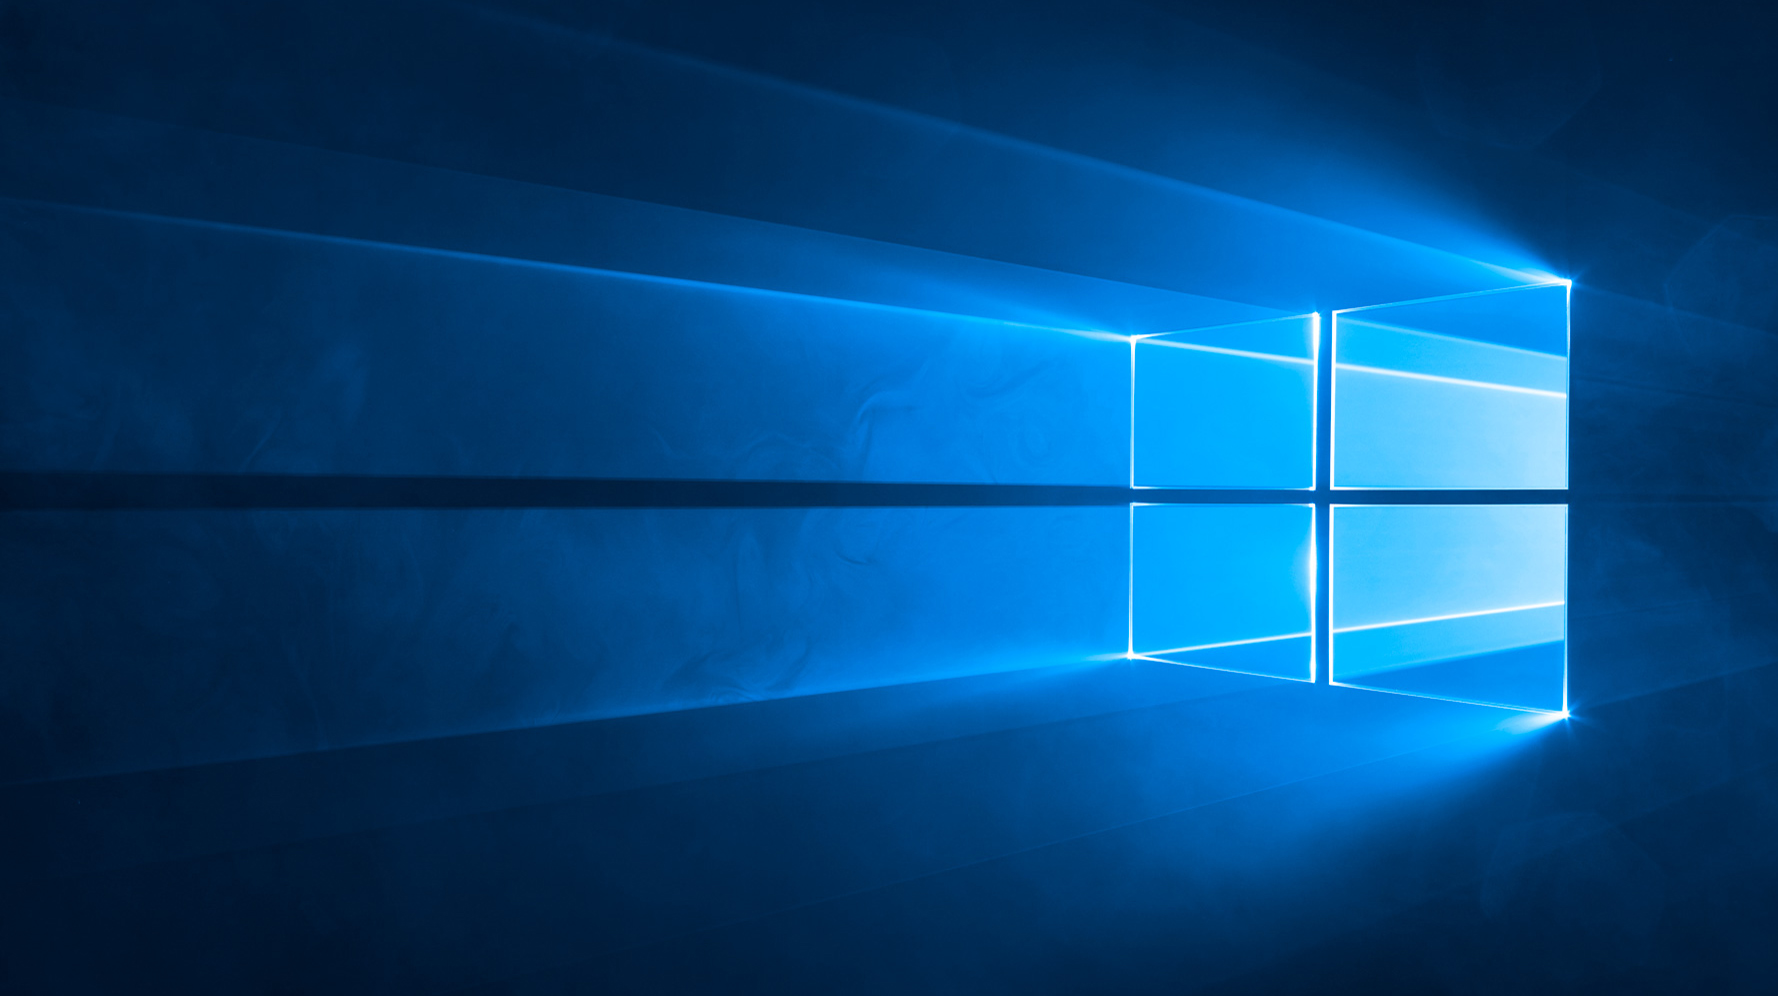 Windows 10 akhir dukungan datang pada 2025